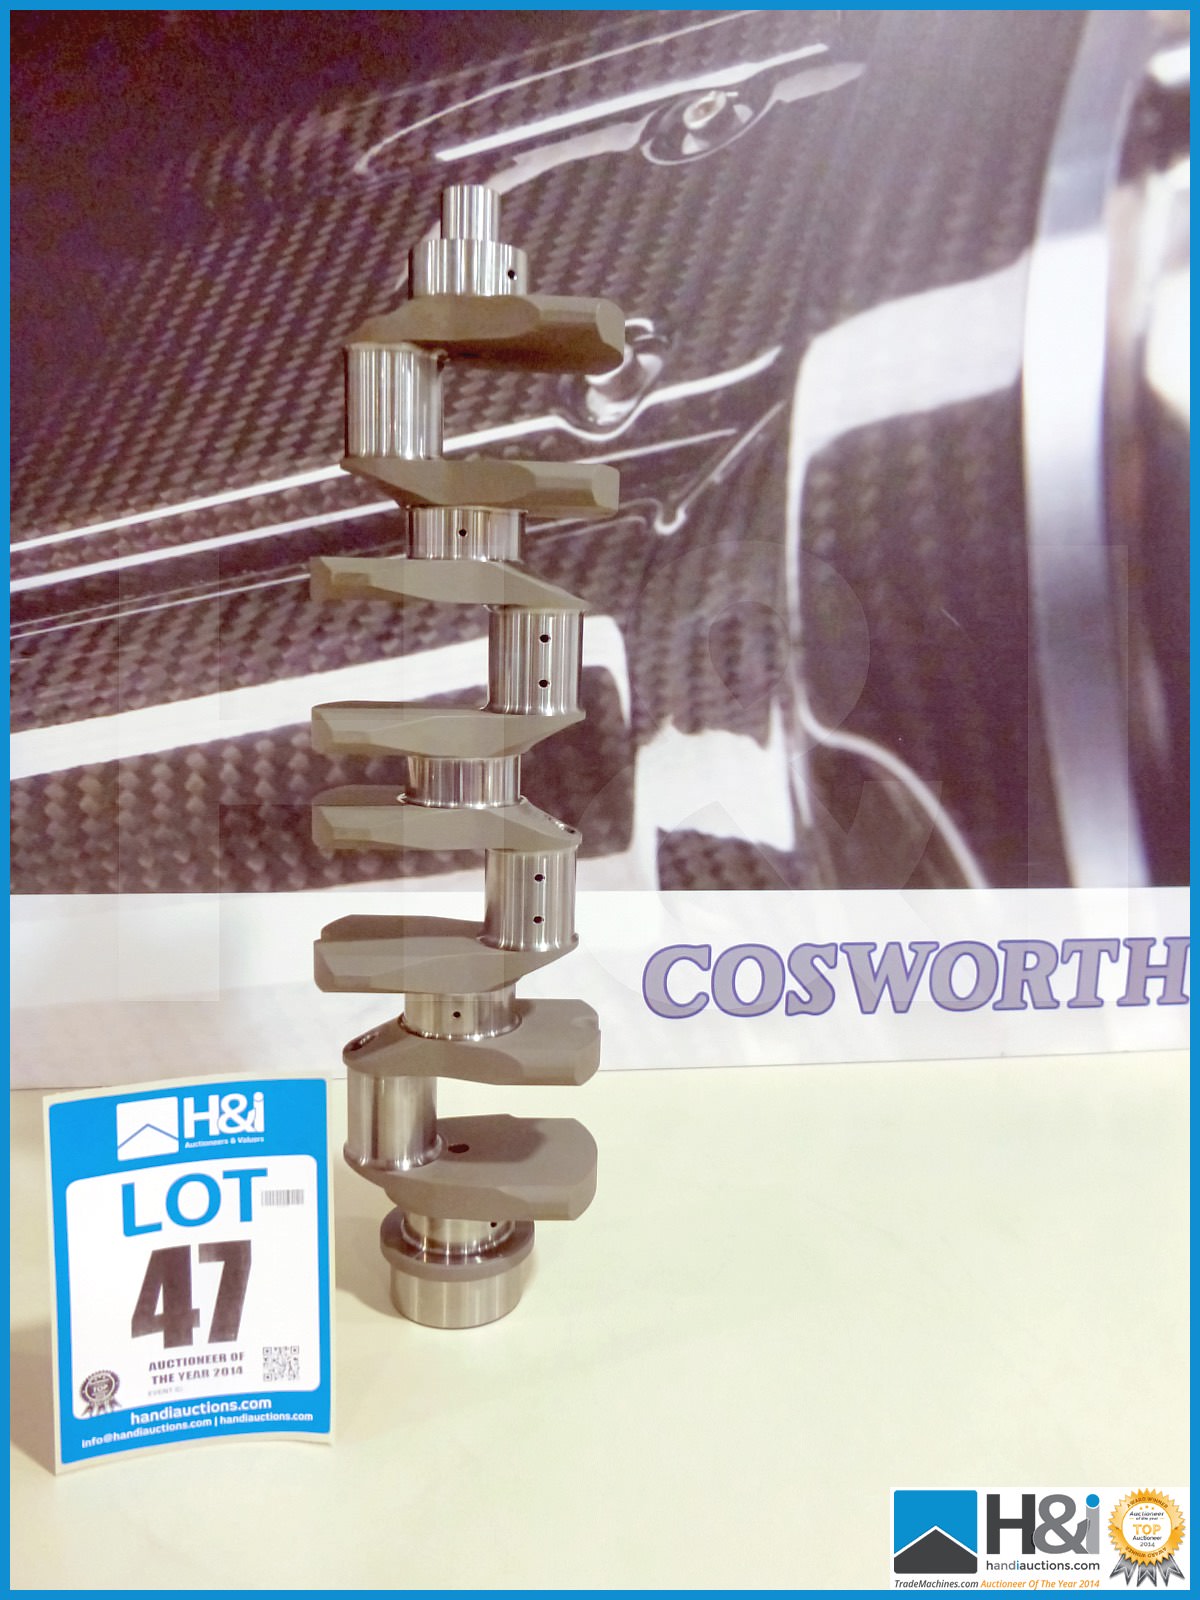 1 off Cosworth XG crankshaft. Appx lot value over GBP 10,000 -- MC:XG1317 CILN:55